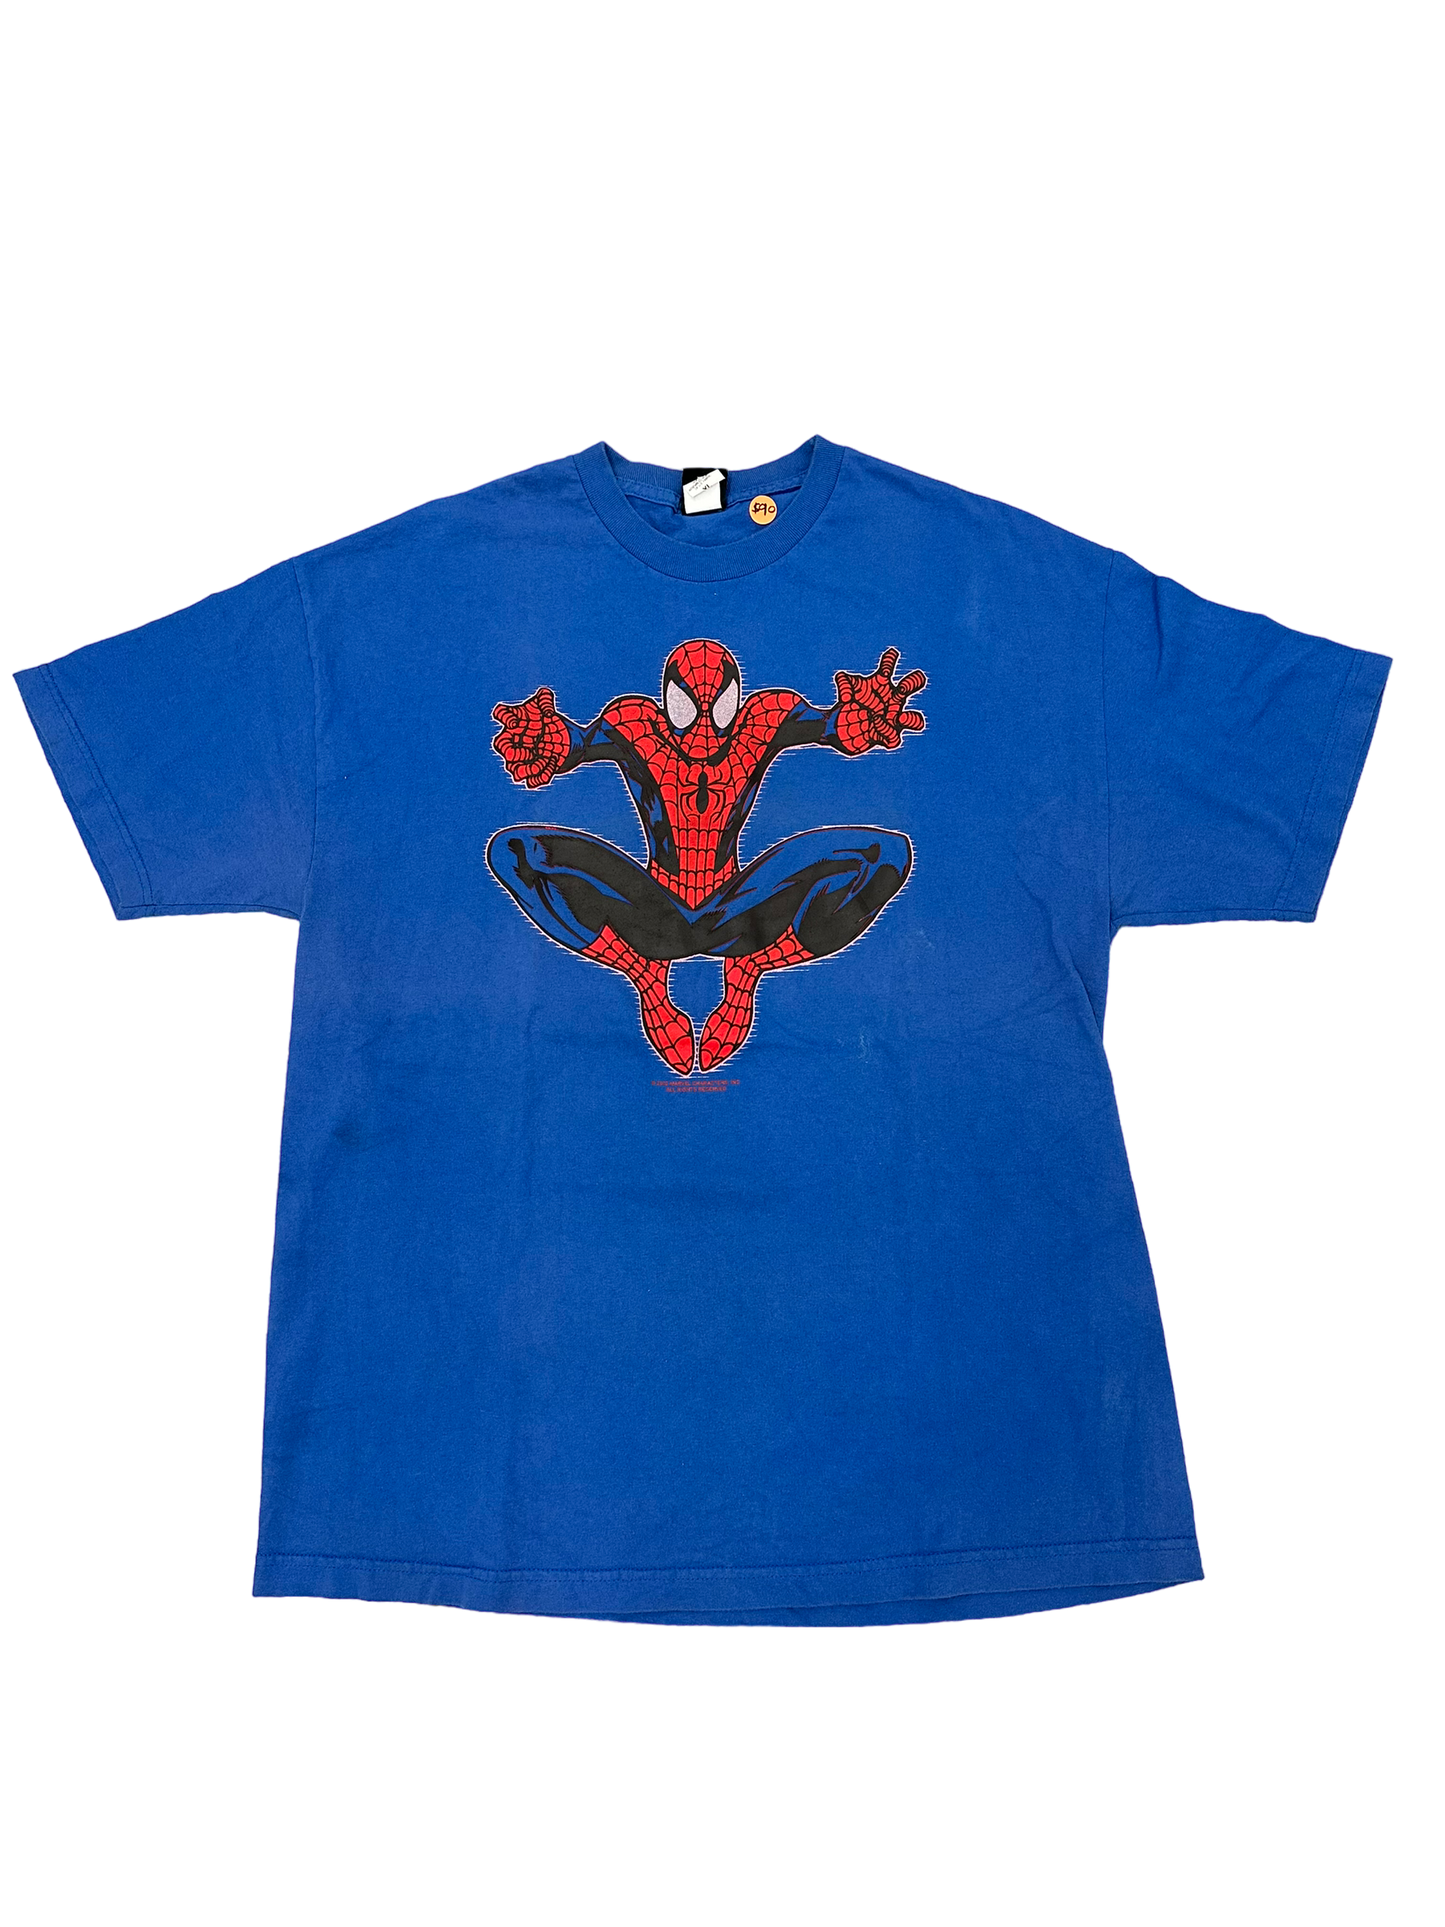 Spiderman Vintage tee 2002